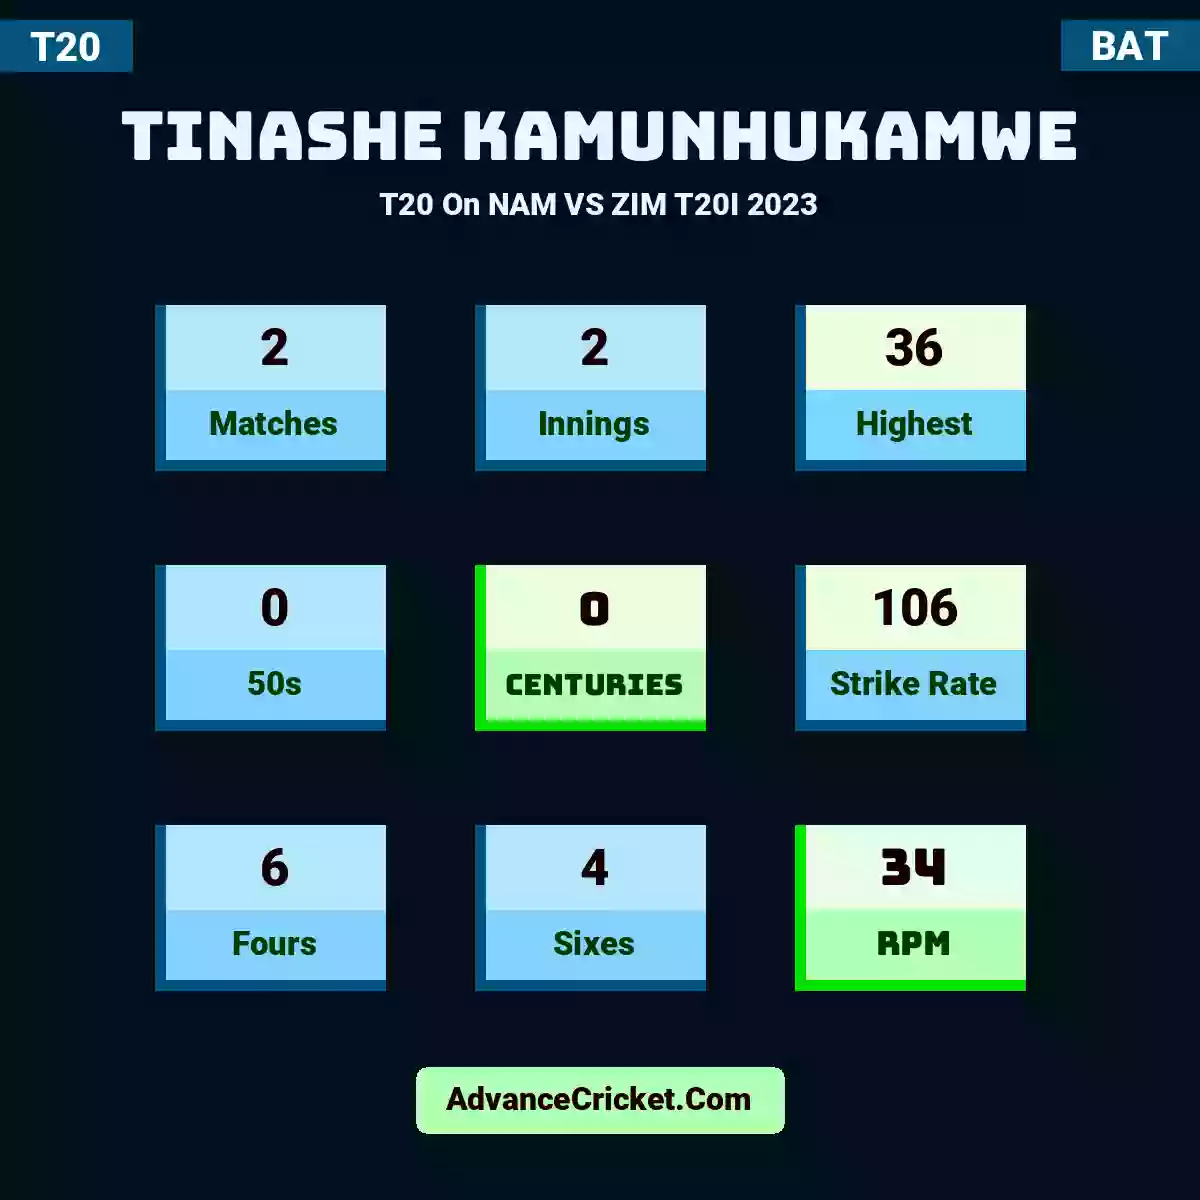 Tinashe Kamunhukamwe T20  On NAM VS ZIM T20I 2023, Tinashe Kamunhukamwe played 2 matches, scored 36 runs as highest, 0 half-centuries, and 0 centuries, with a strike rate of 106. T.Kamunhukamwe hit 6 fours and 4 sixes, with an RPM of 34.